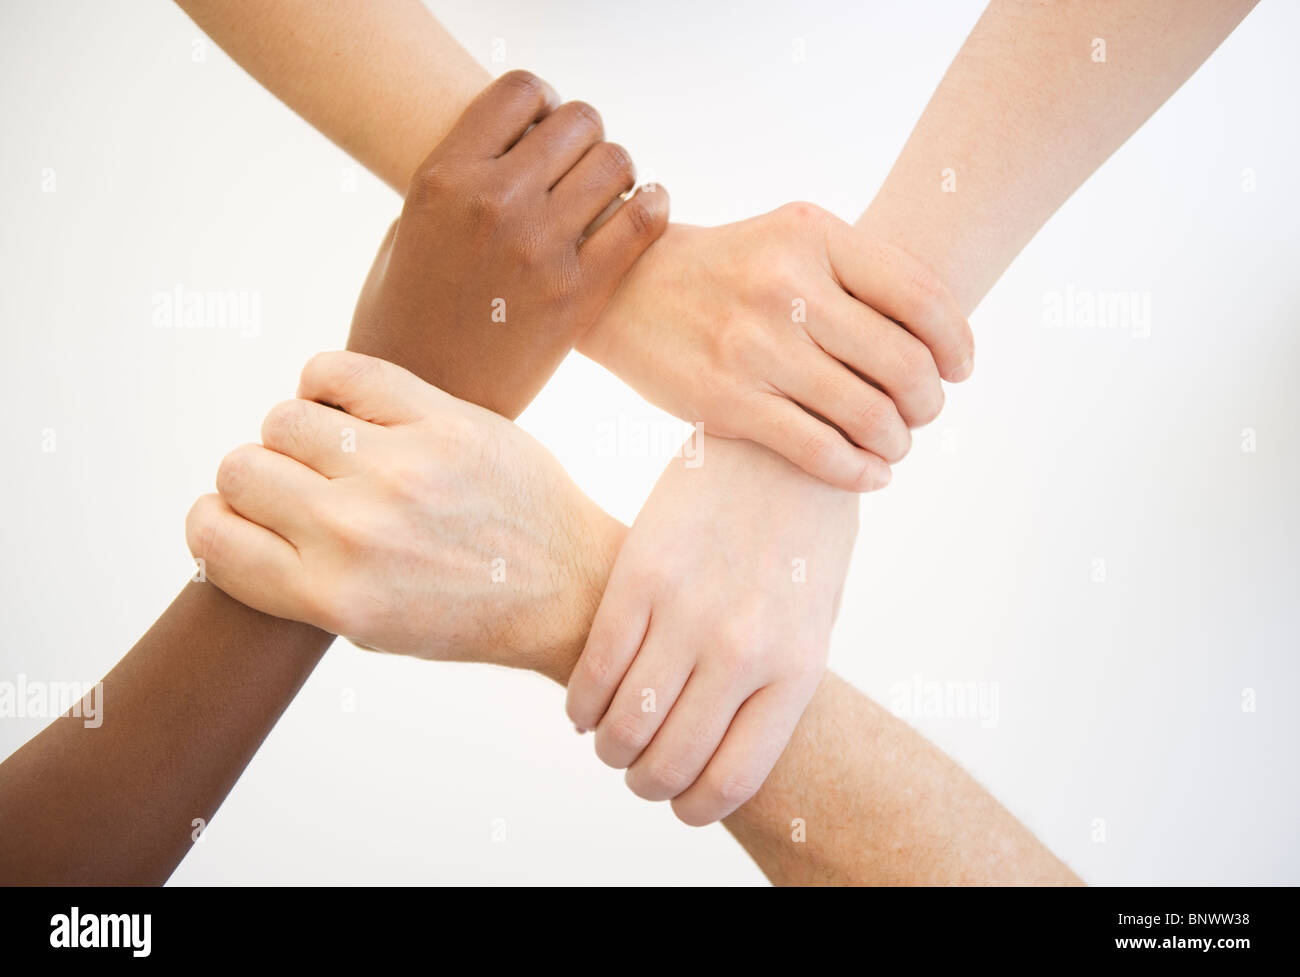 Vier Hände halten Handgelenke anderer Menschen Stockfoto